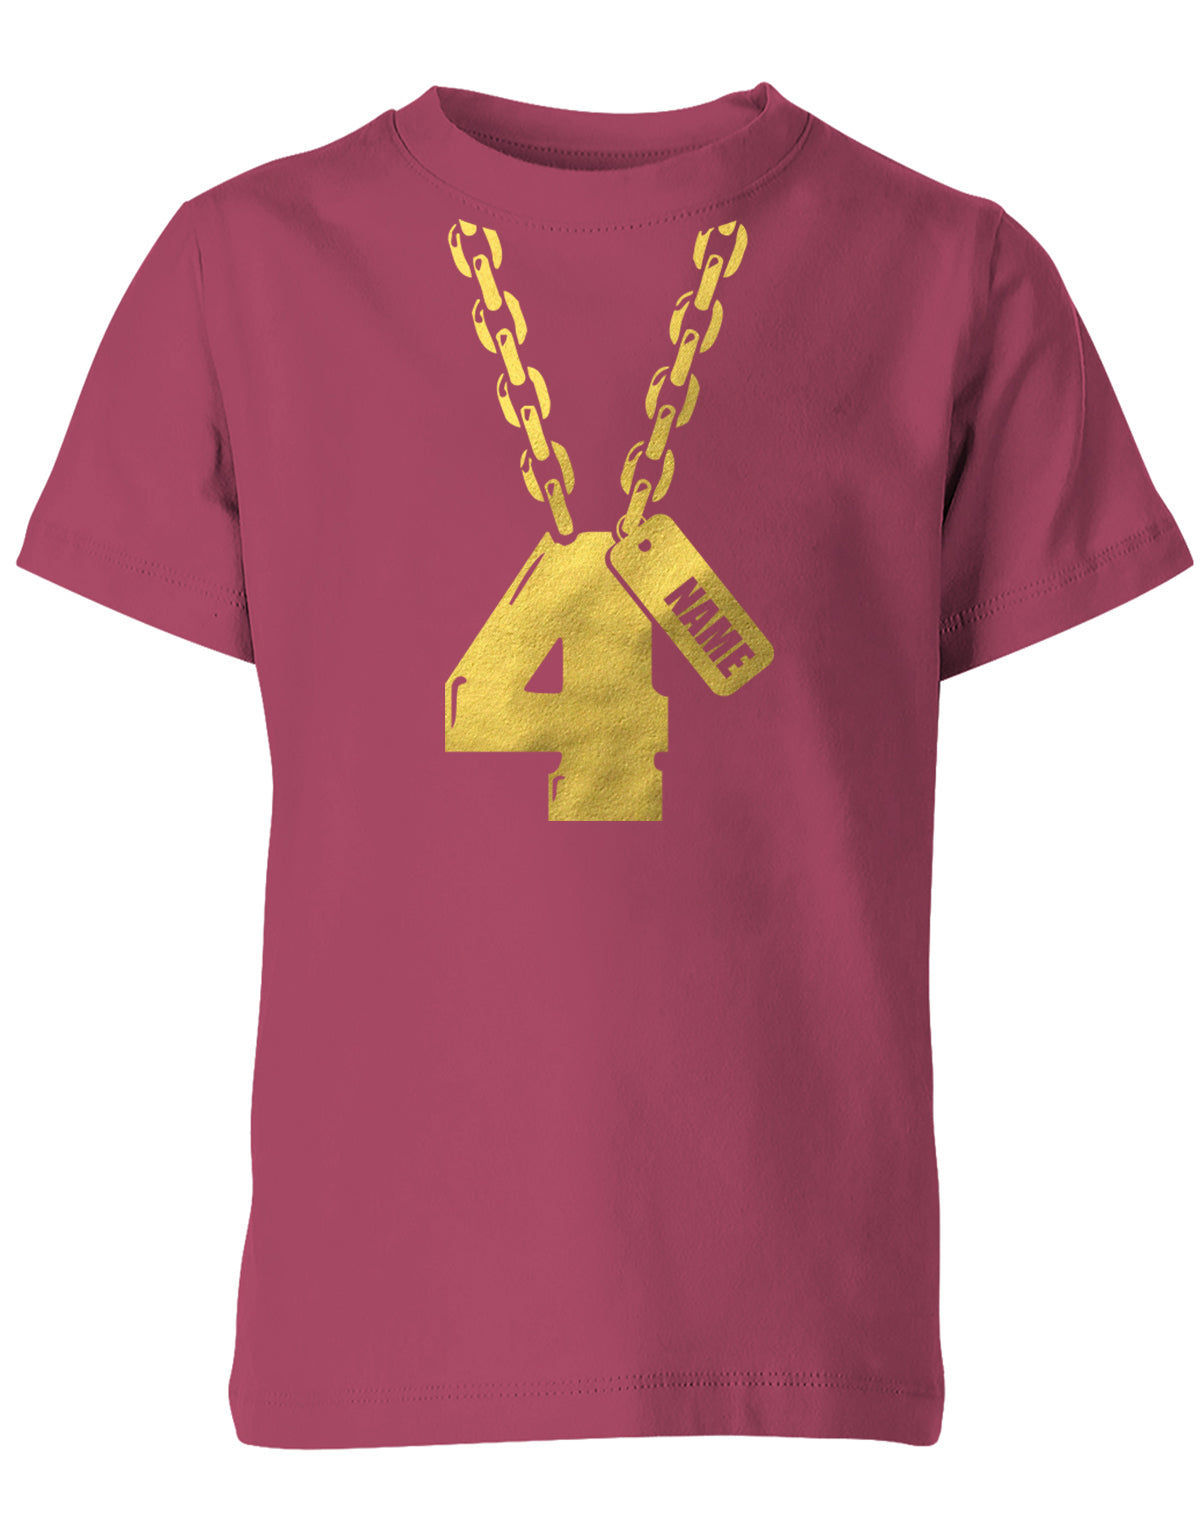 Geburtstags T-Shirt 4 Jahre Junge und Mädchen Goldene Kette 4 mit Name